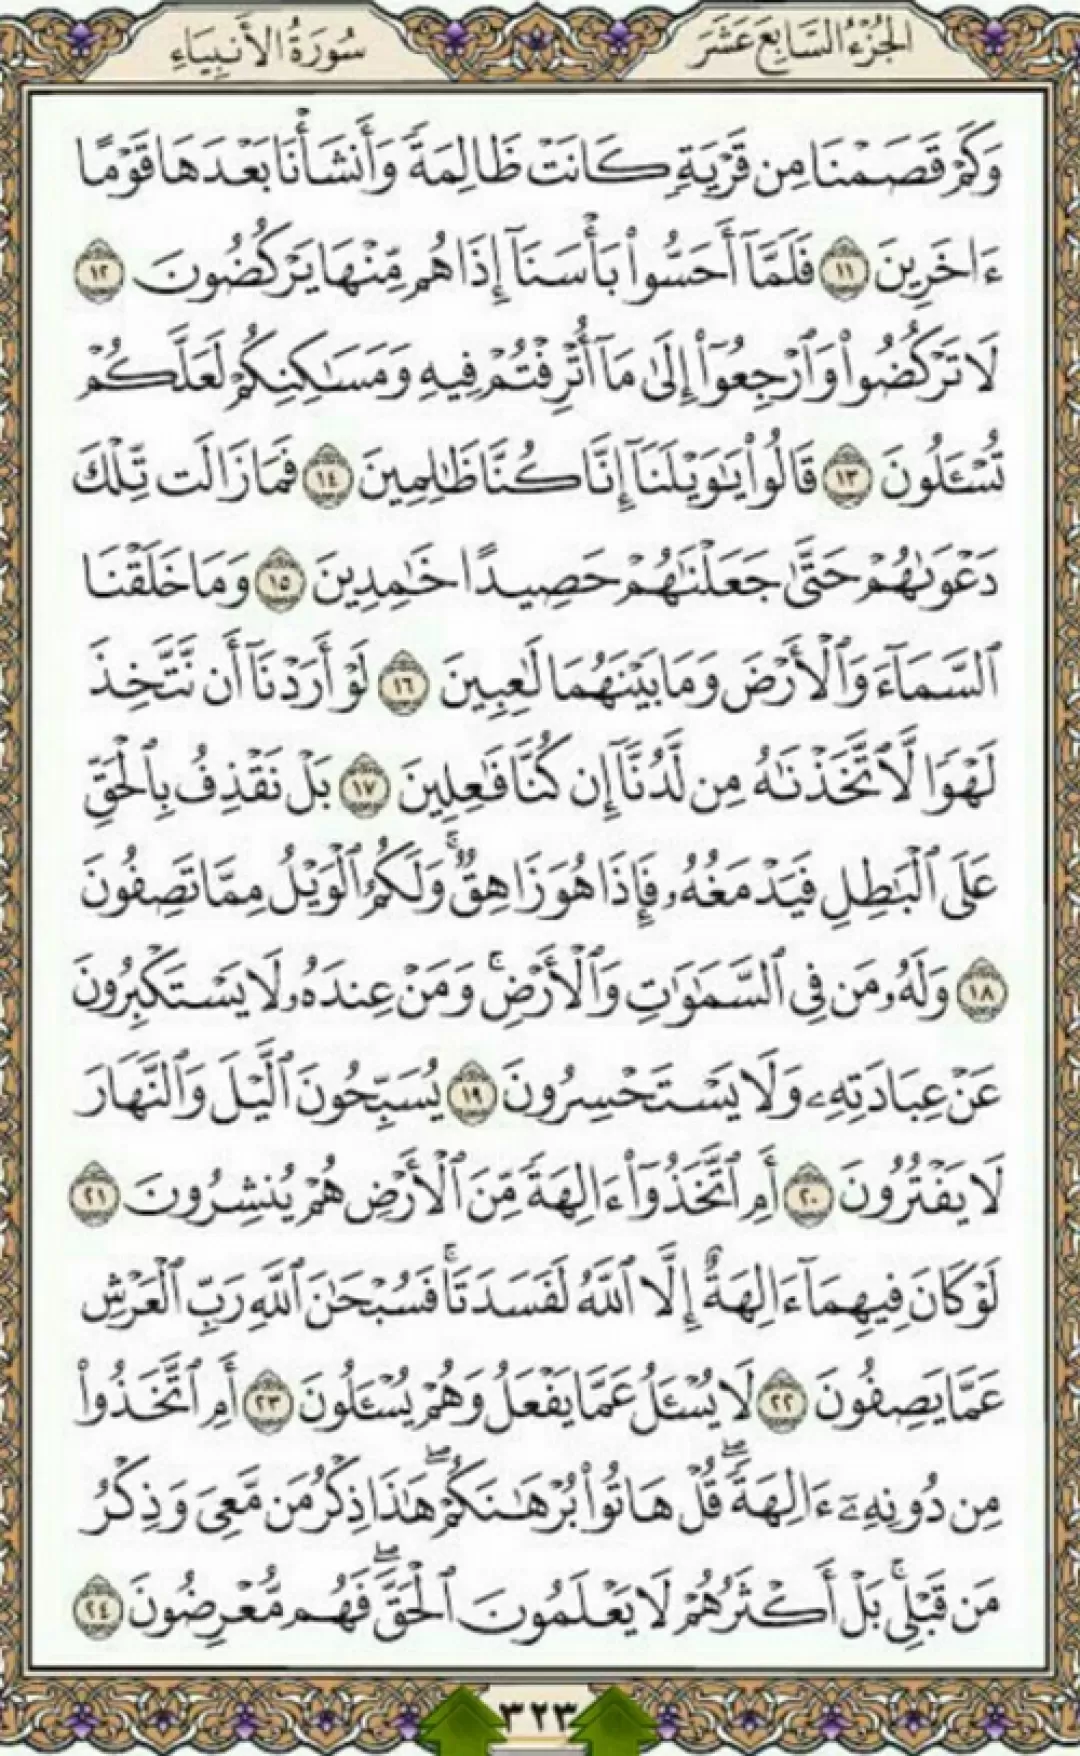 یک صفحه از نورانیت قرآن مجید